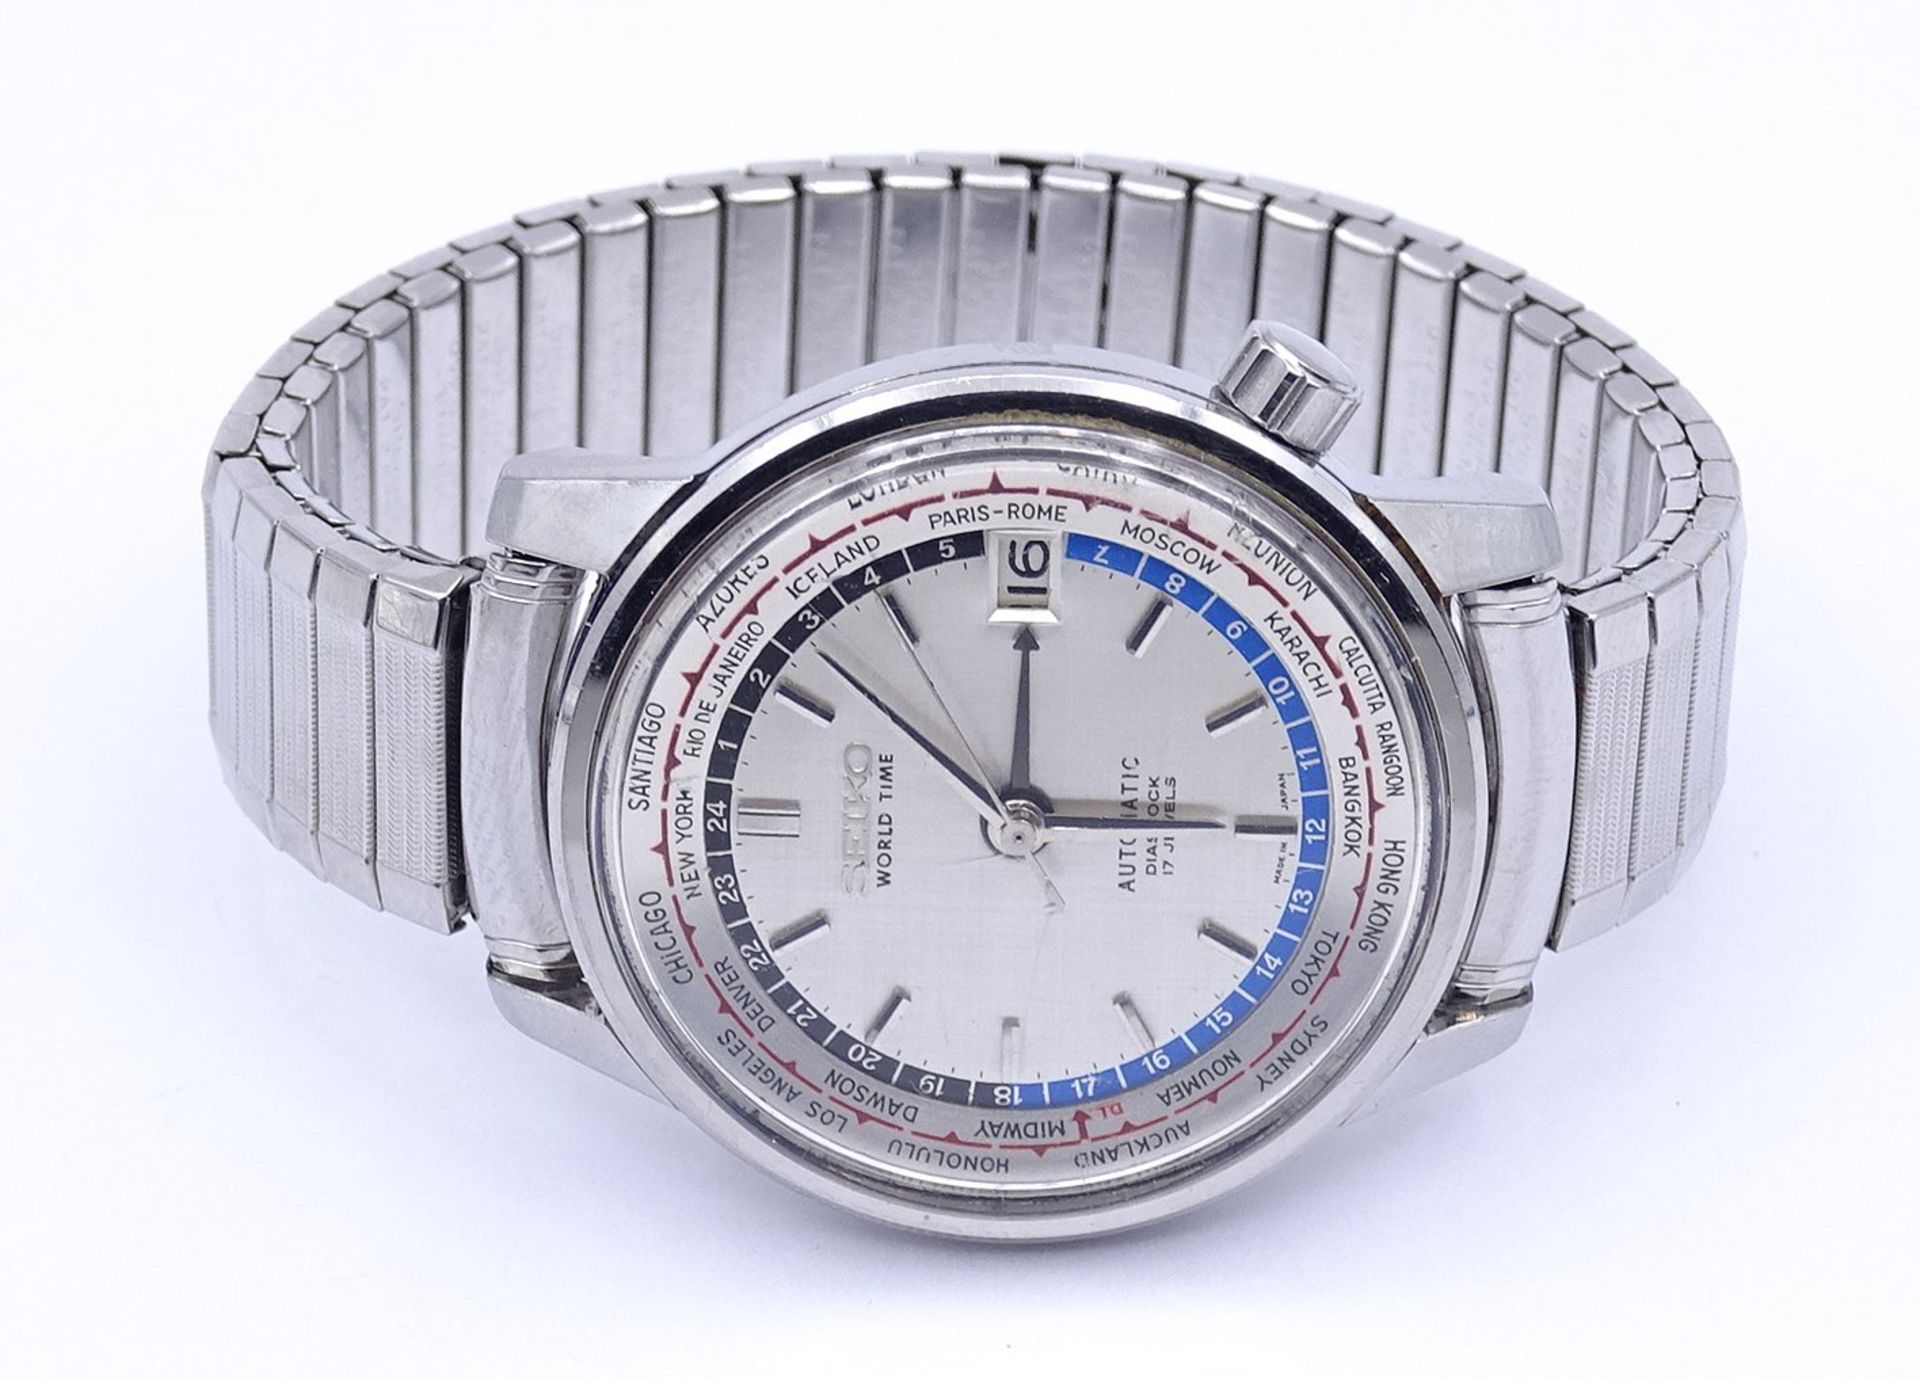 Herren Armbanduhr SEIKO World Timer, 6217, Automatikwerk, Werk läuft, D. 37mm, Glas mit Kratzern - Image 2 of 5